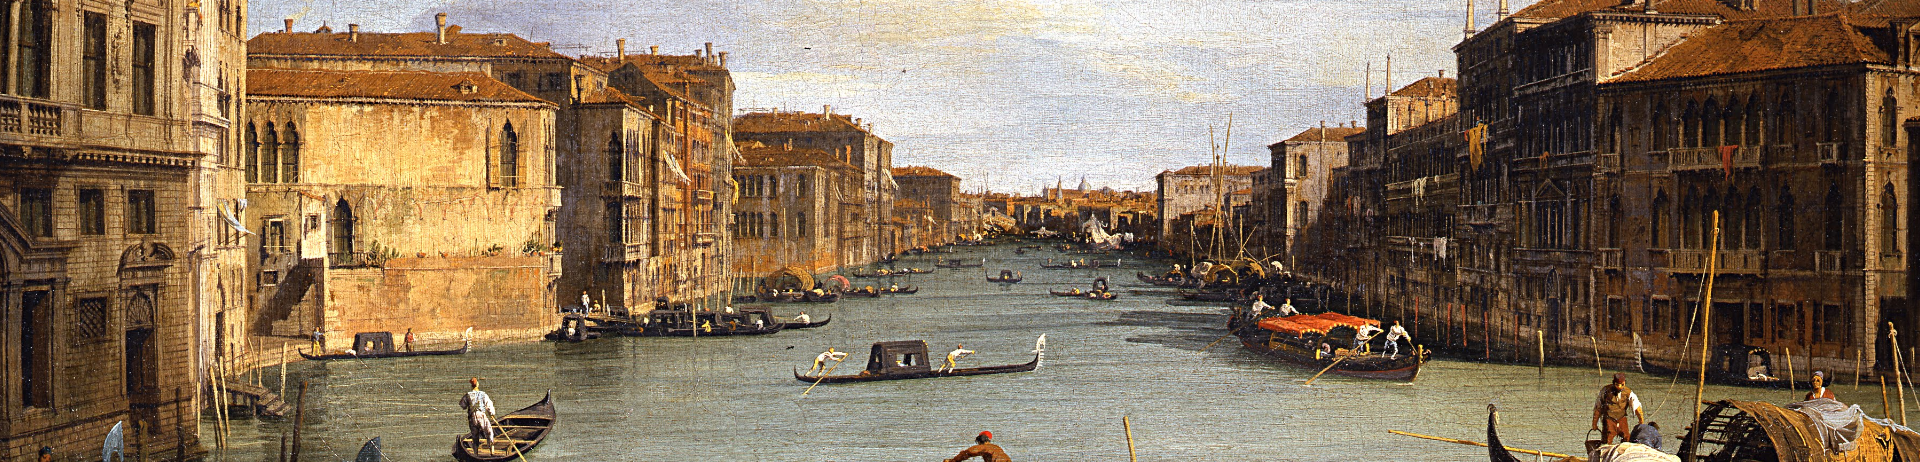 Peinture d'un canal emprunté par des gondoliers et passant entre les bâtiments d'une ville